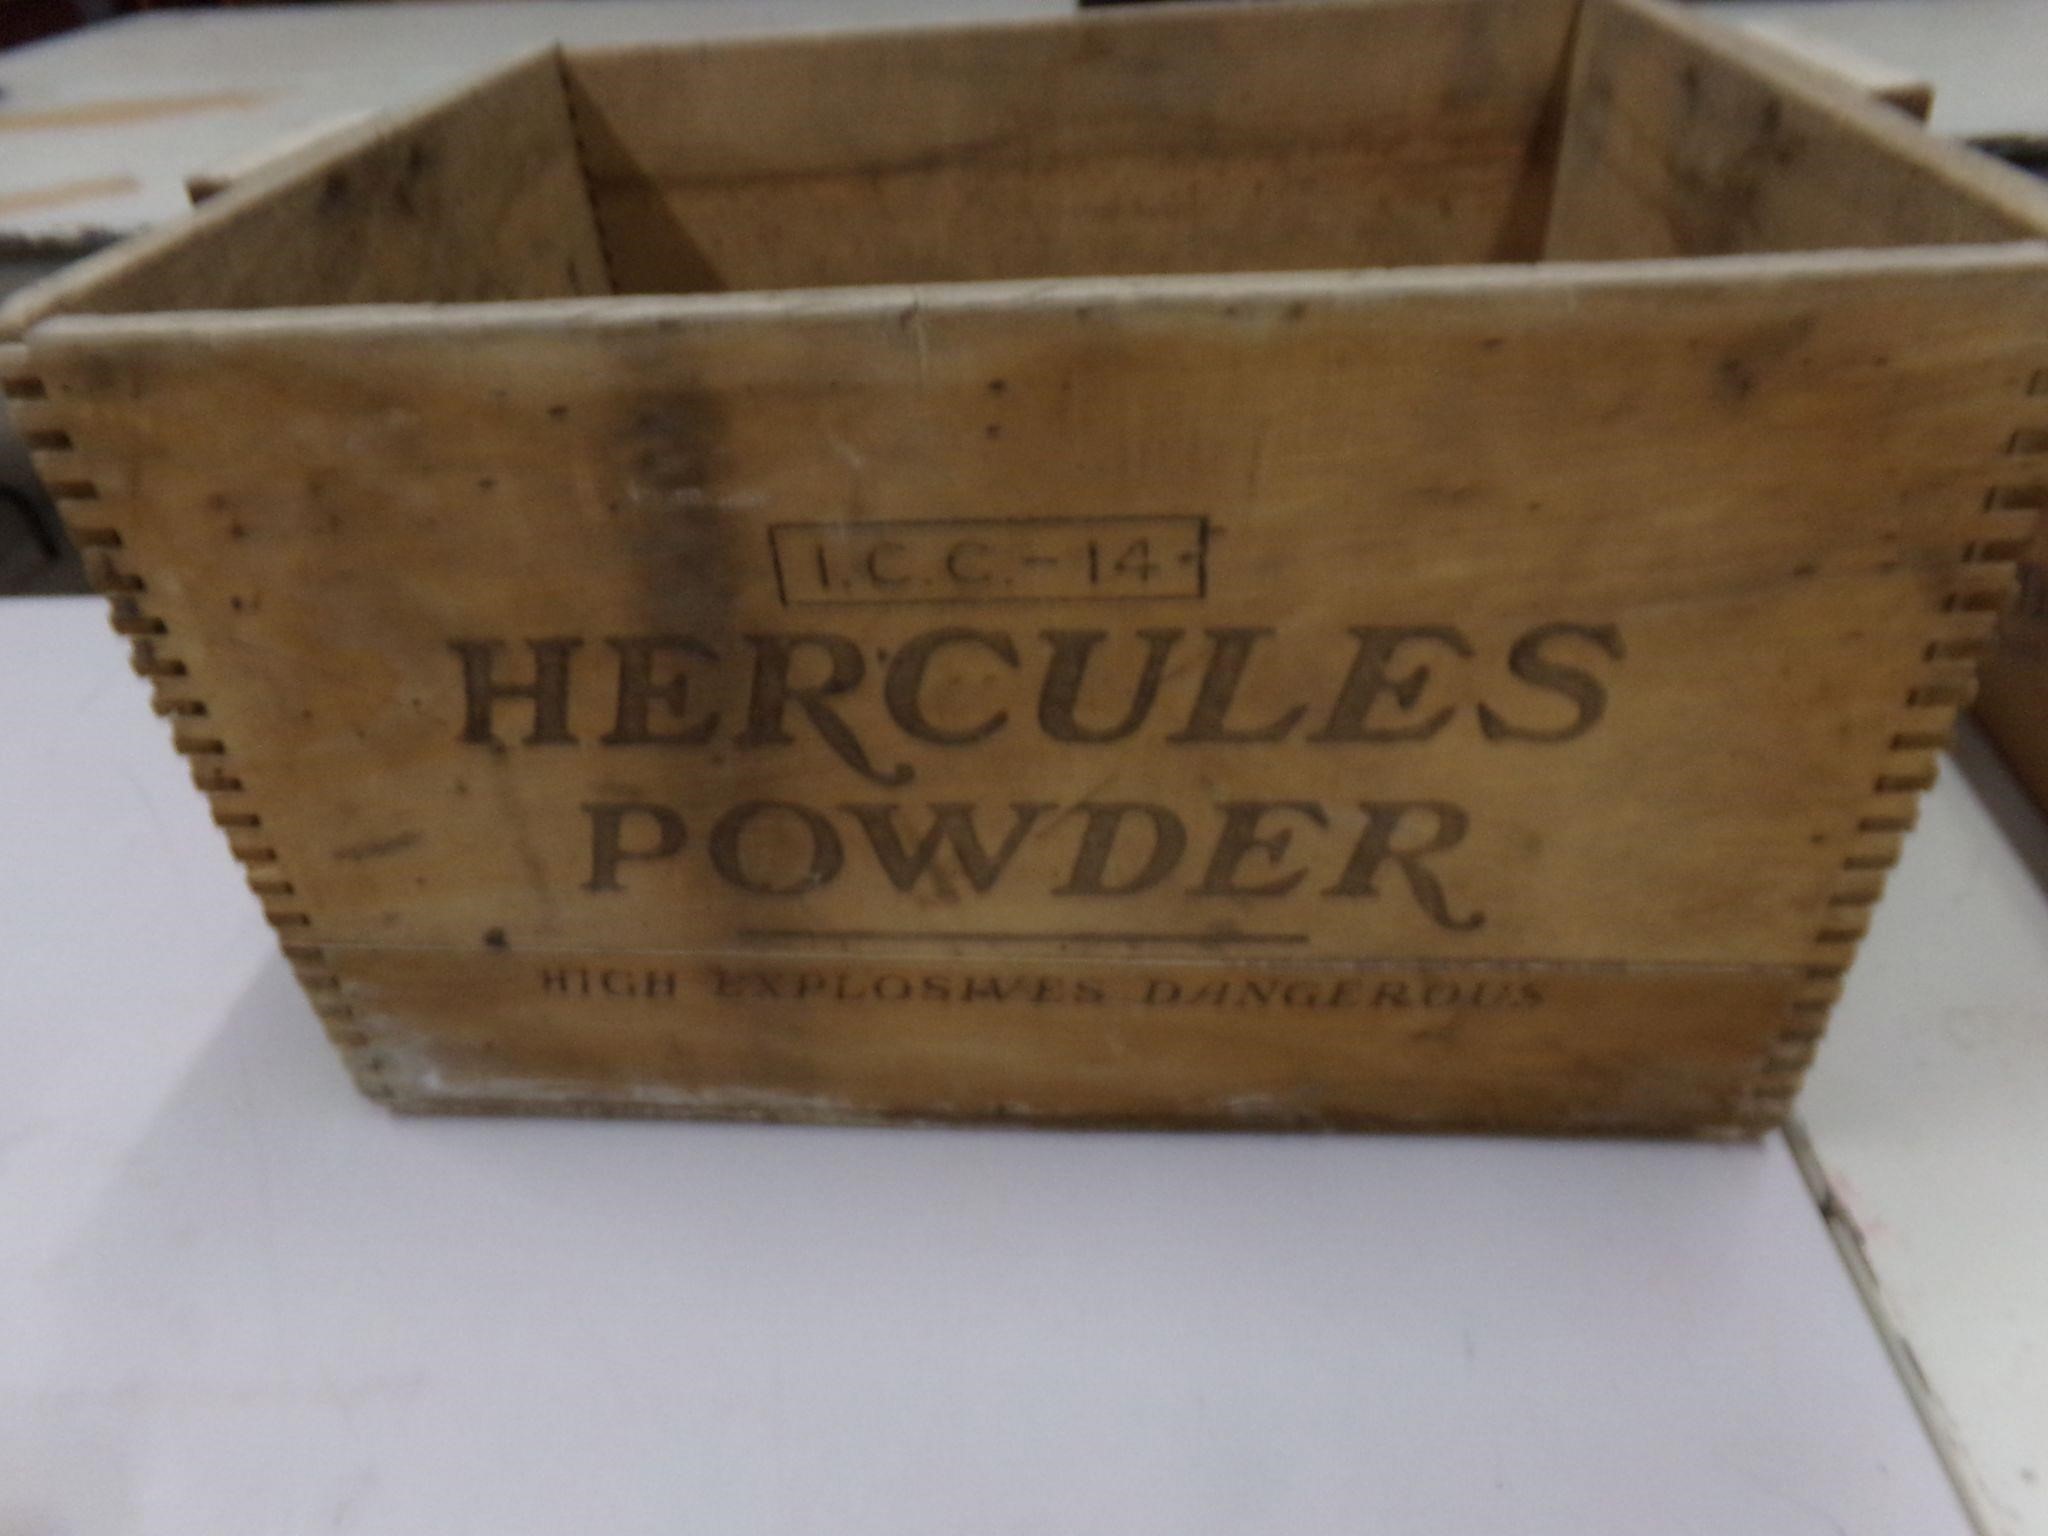 Hercules powder box